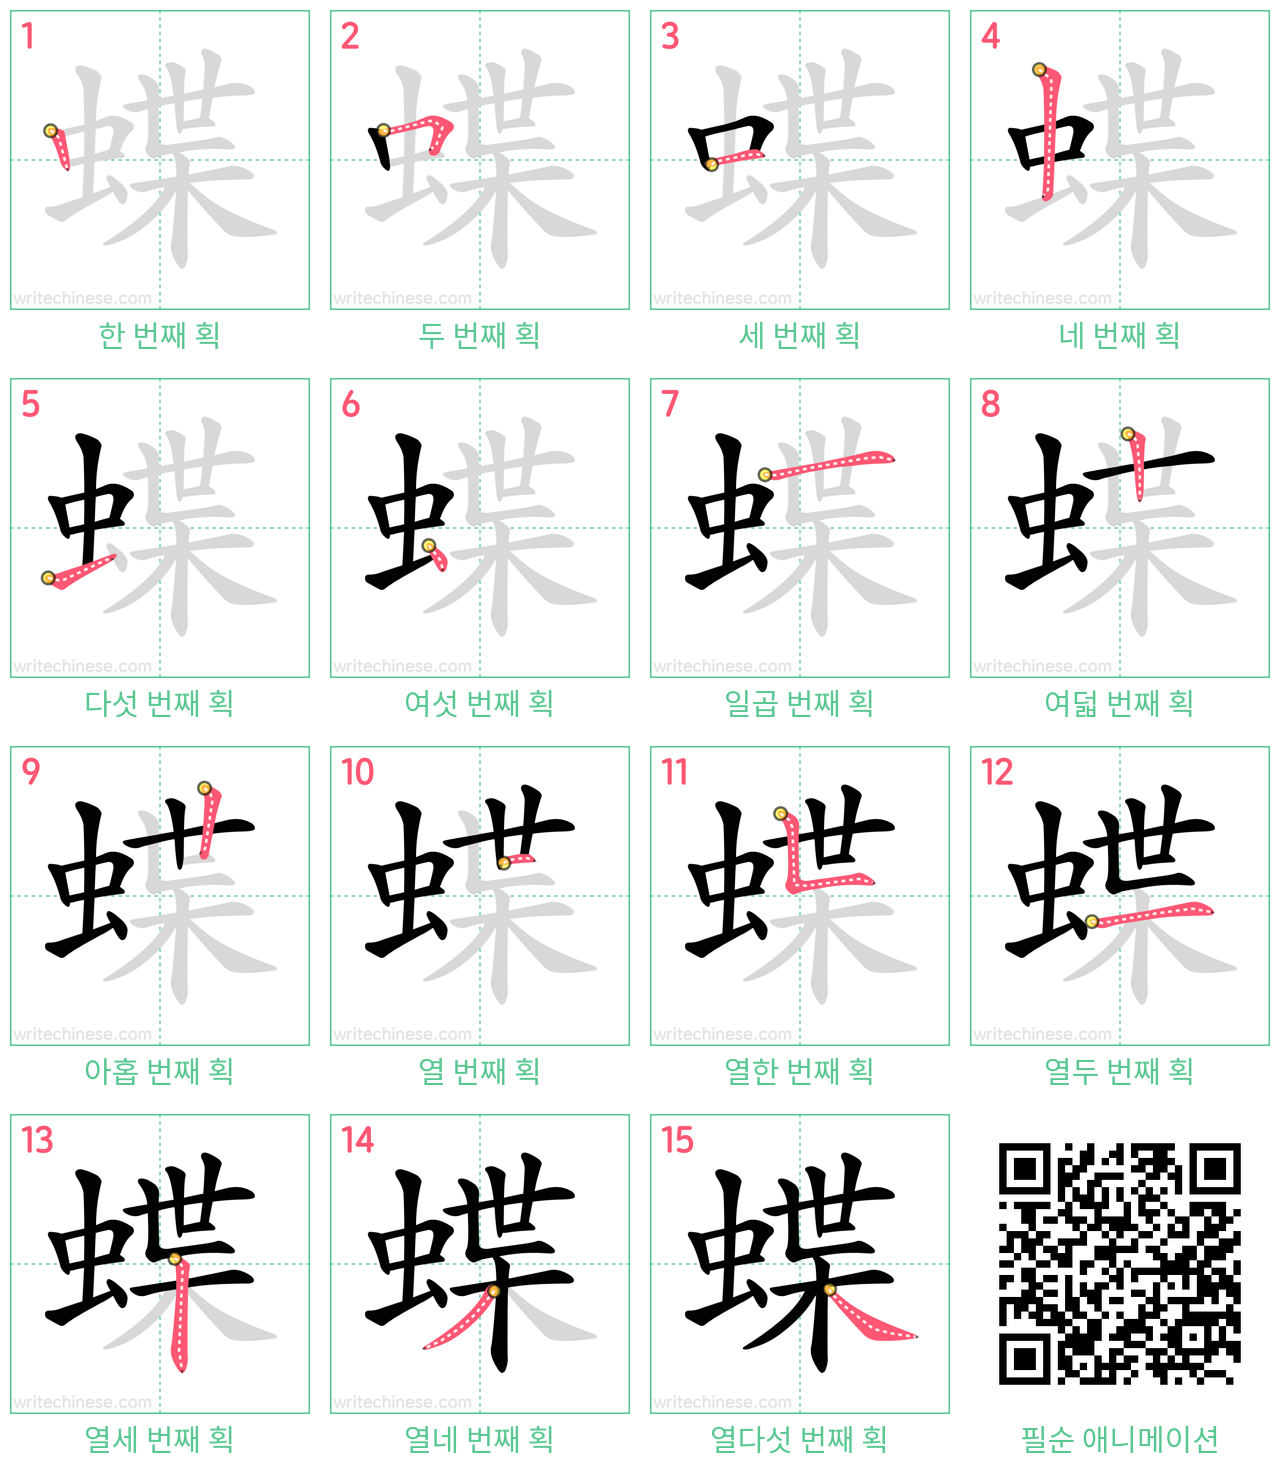 蝶 step-by-step stroke order diagrams